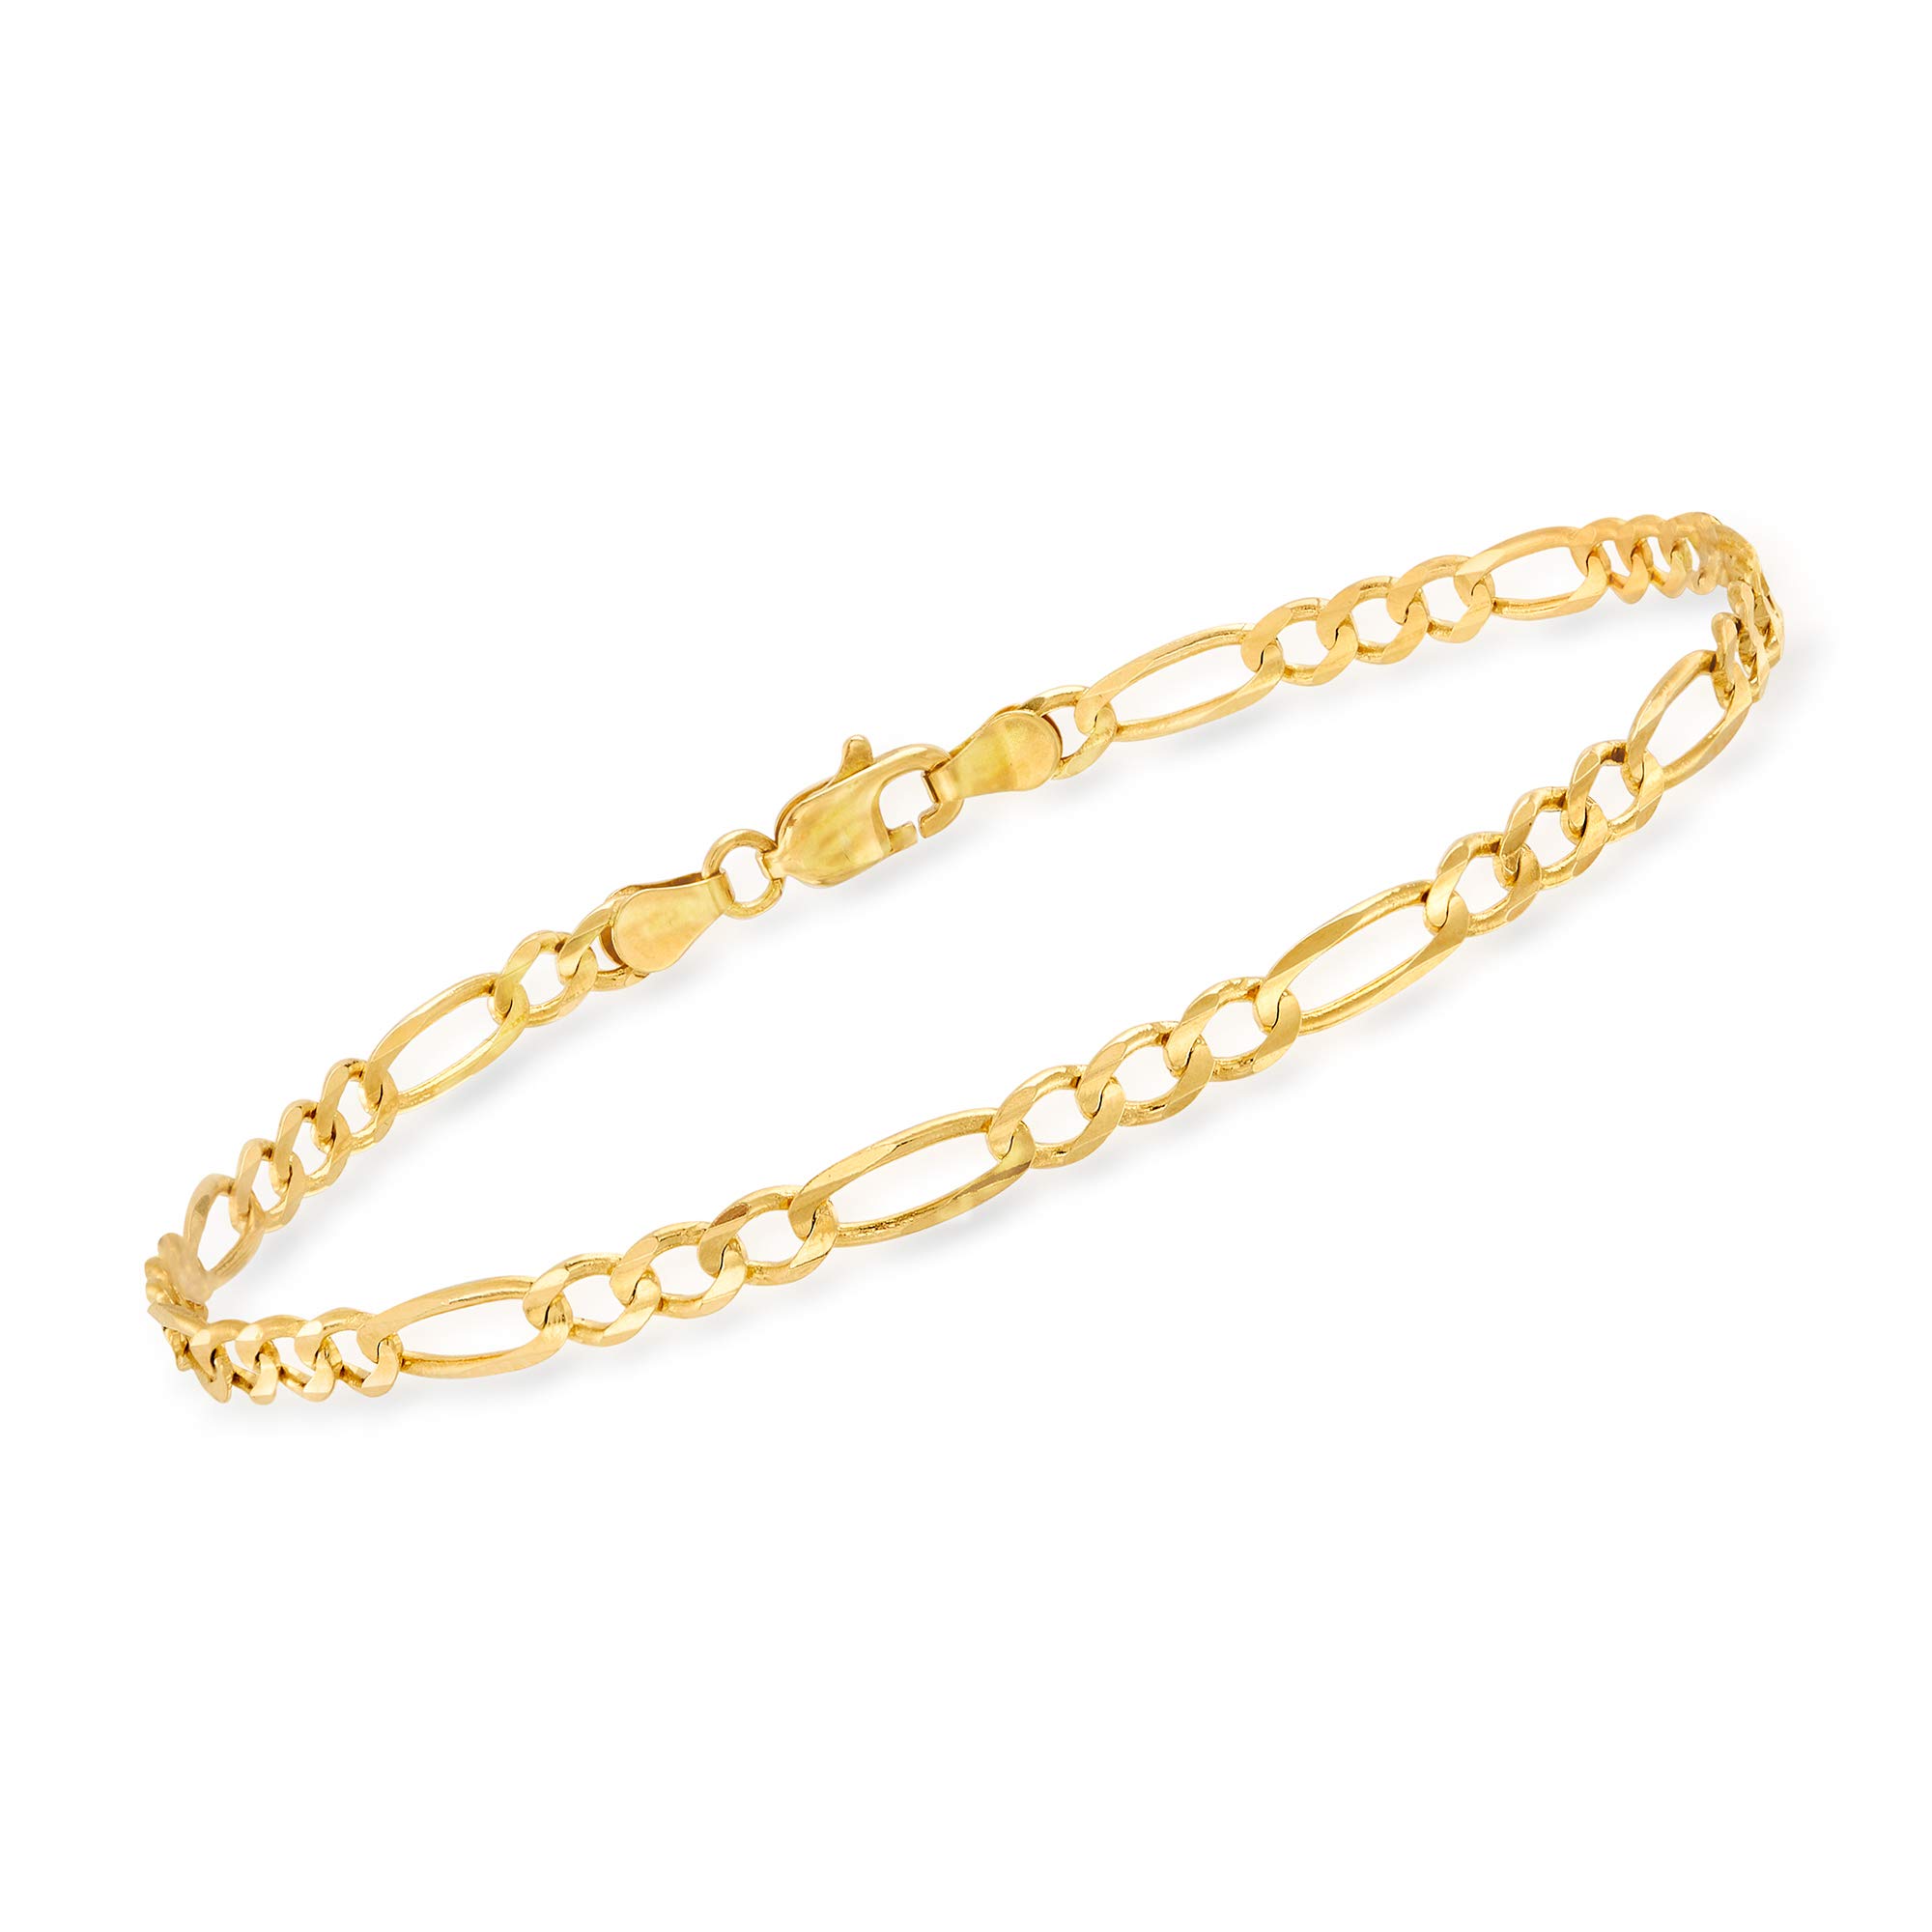 Ross-Simons Men's 14kt Yellow Gold Figaro-Link Bracelet. 8 inches